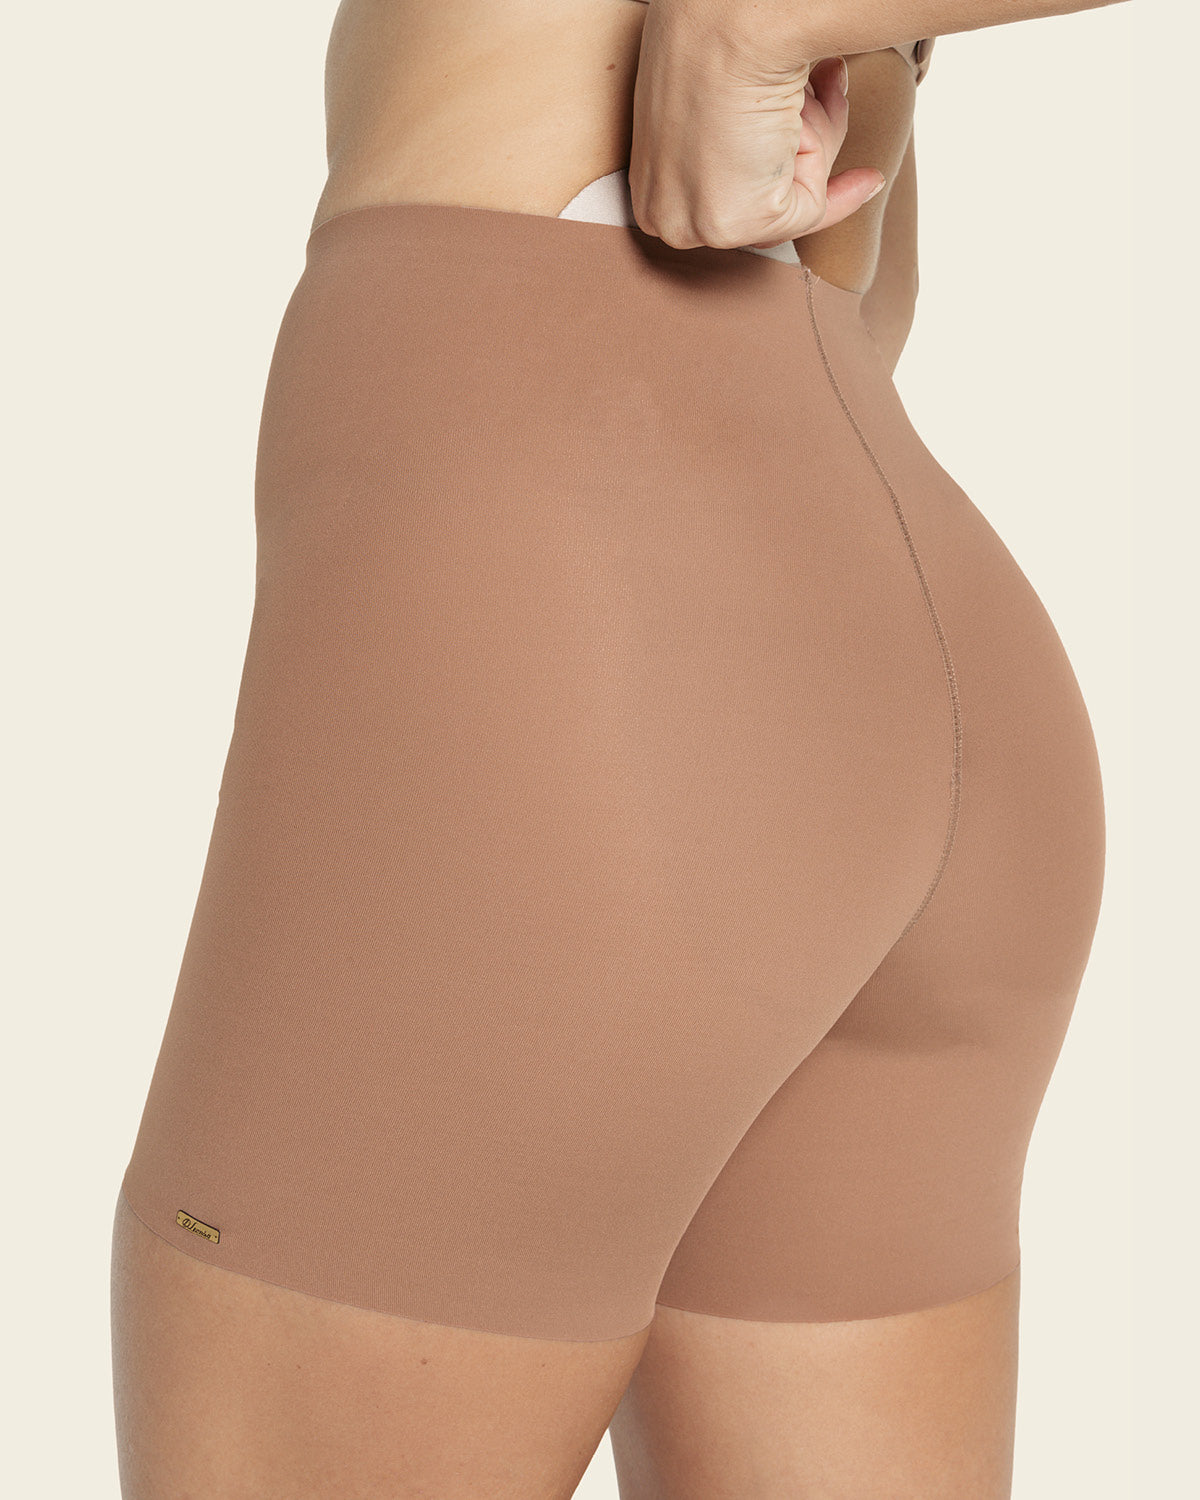 Bbl Shorts Colombia Shaperwear Woman Butt Lifter Skims Underwear